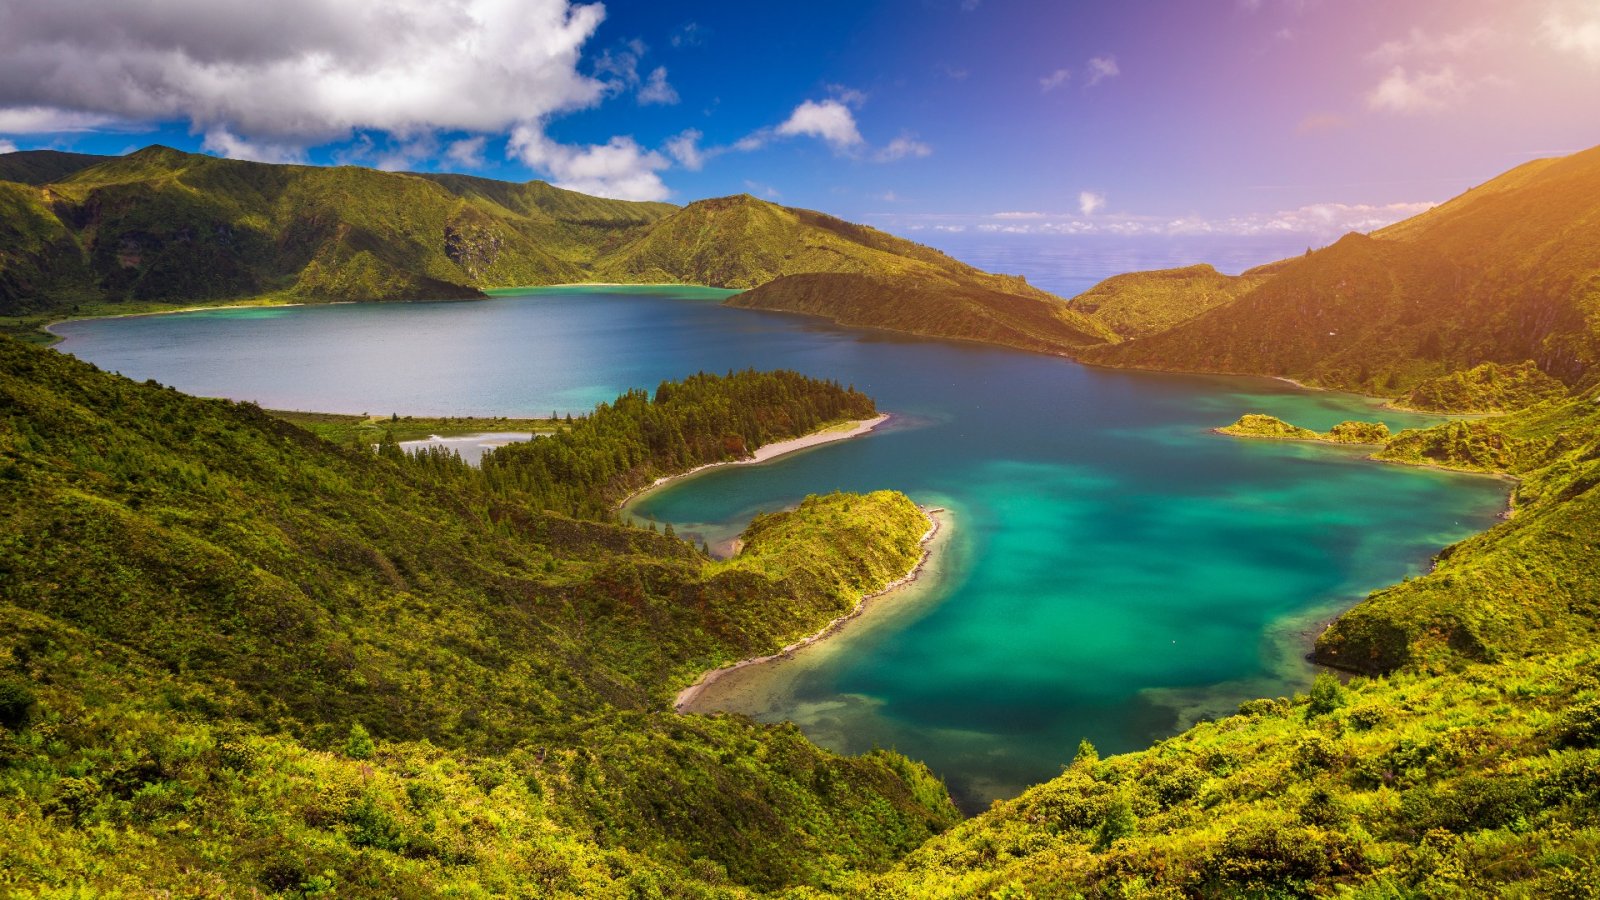 4 μαγευτικά νησιά των Αζορών που πρέπει να επισκεφτείτε το 2023 για μεγάλες περιπέτειες